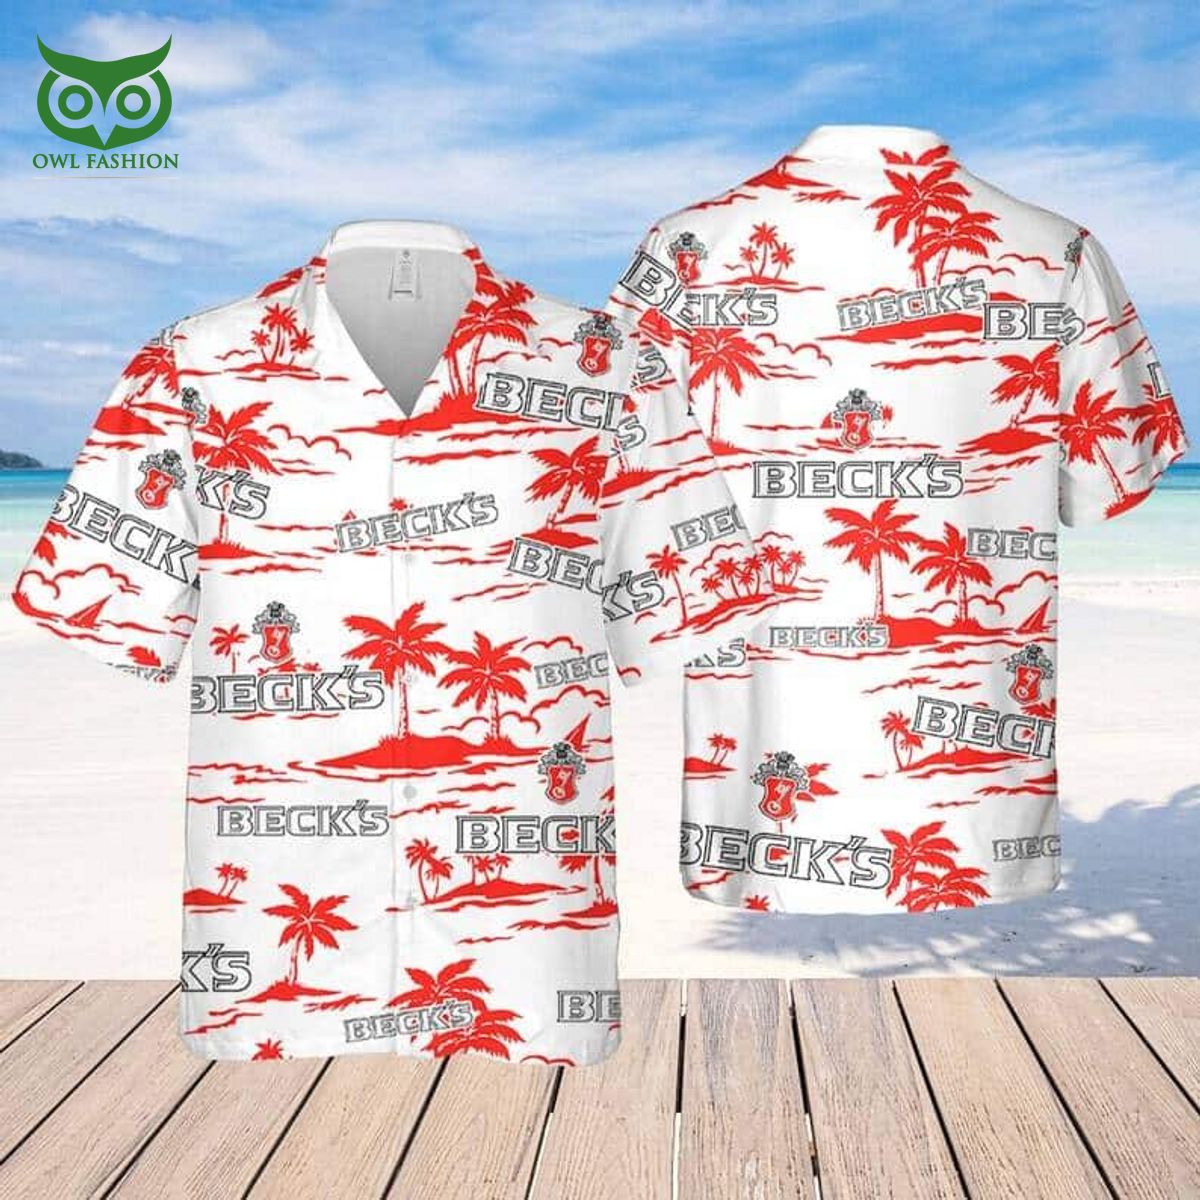 becks beer hawaiian shirt beach gift for friend 1 ftNTX